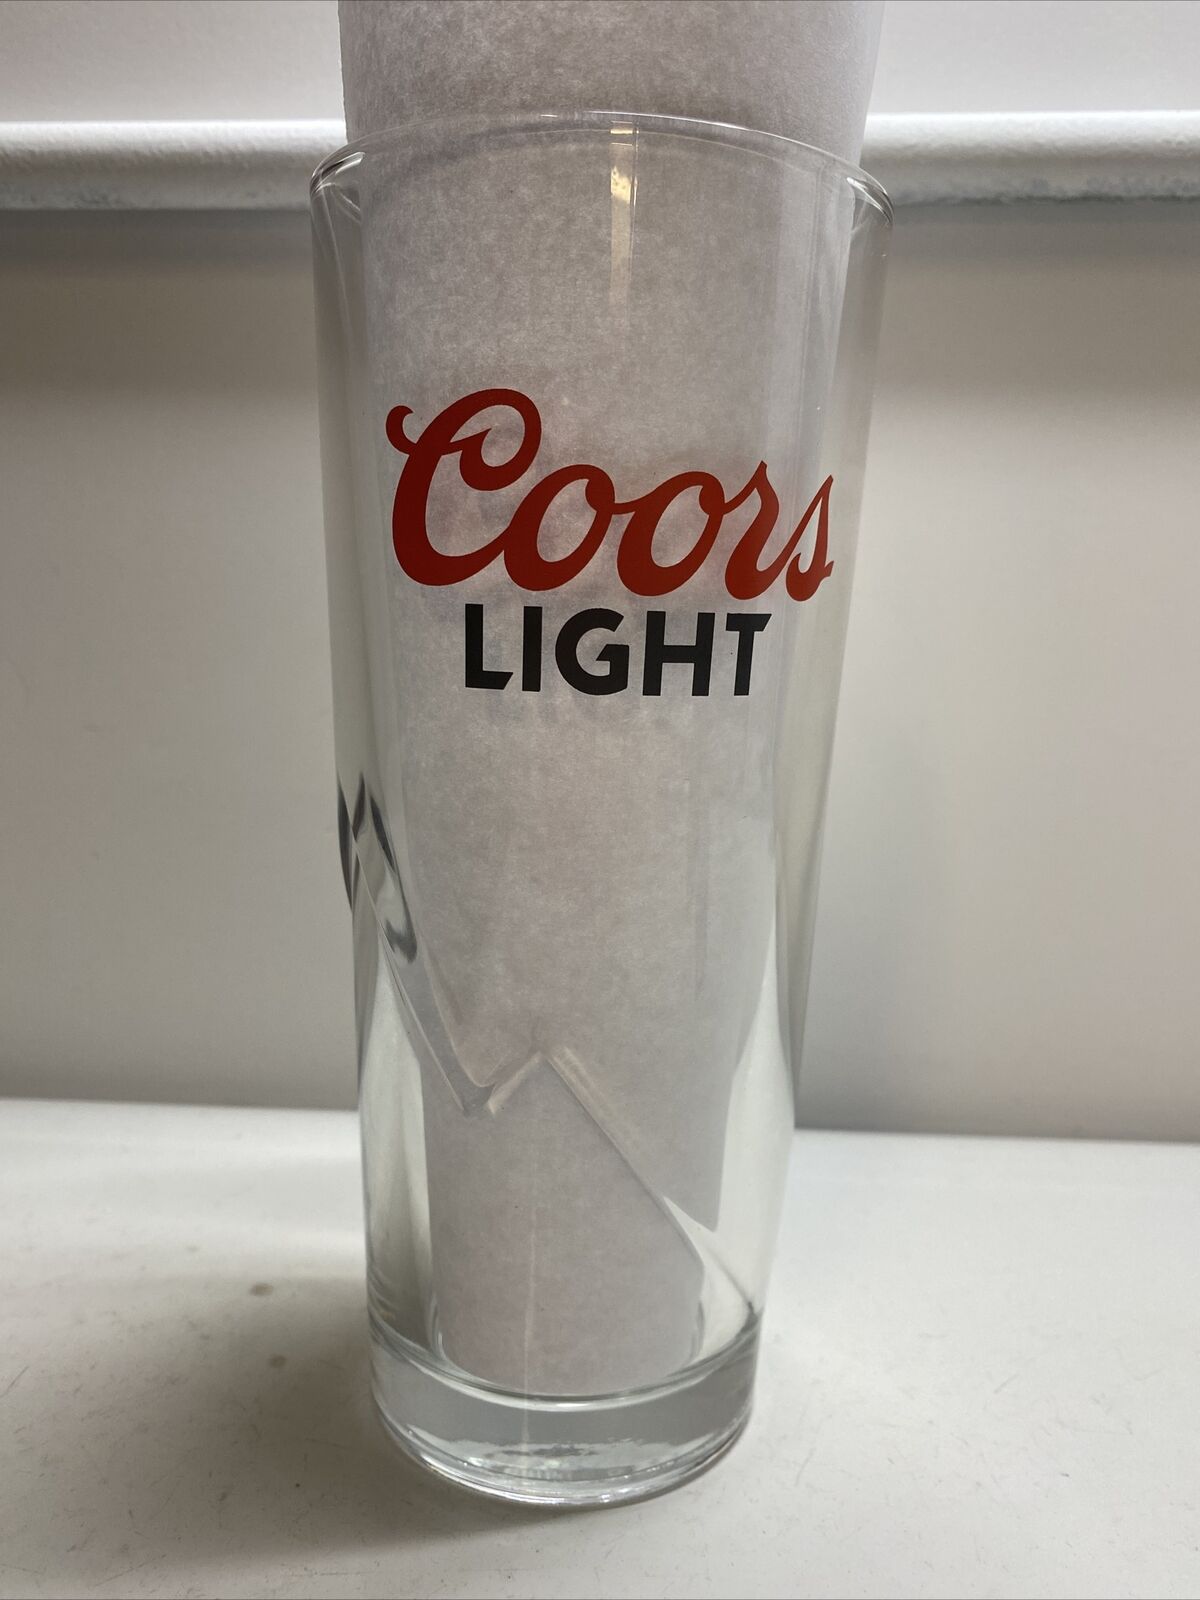 Atlanta Braves Coors Light Chipper Jones 22 oz. Heavy Beer Glass